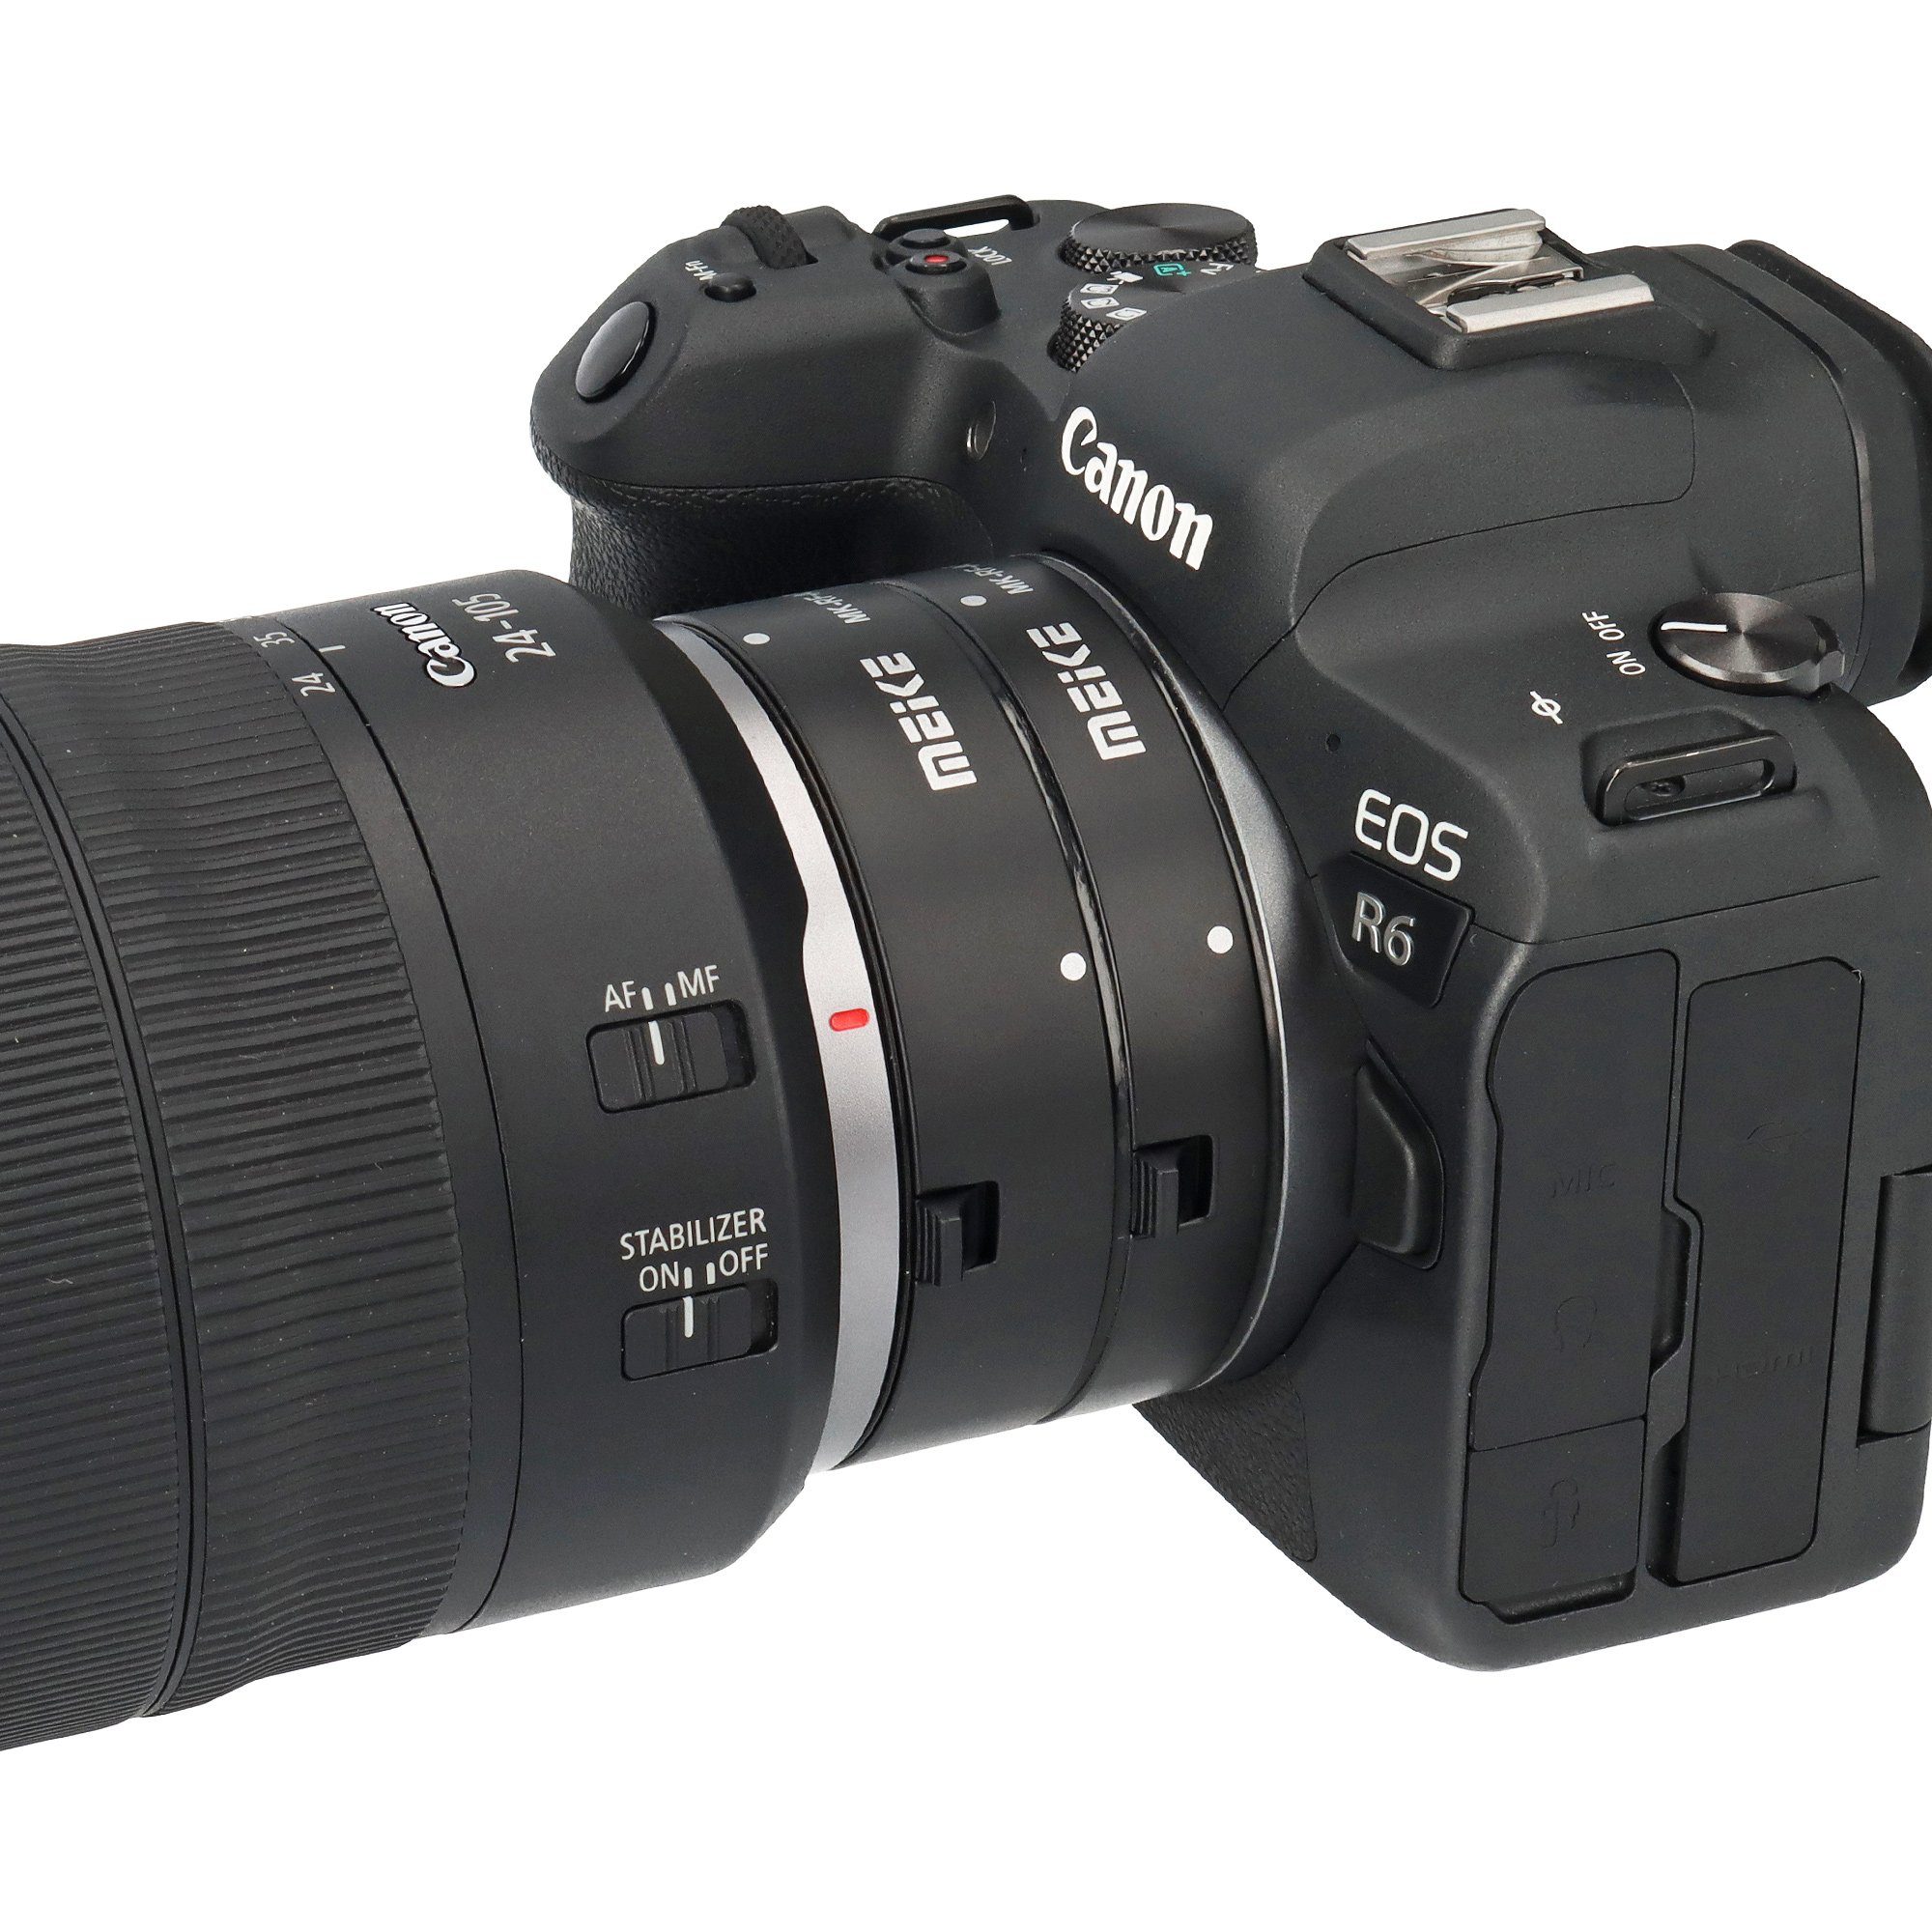 MK-RF-AF1 Makroobjektiv Canon EOS für R Automatik-Makro-Zwischenringe Meike Systemkameras